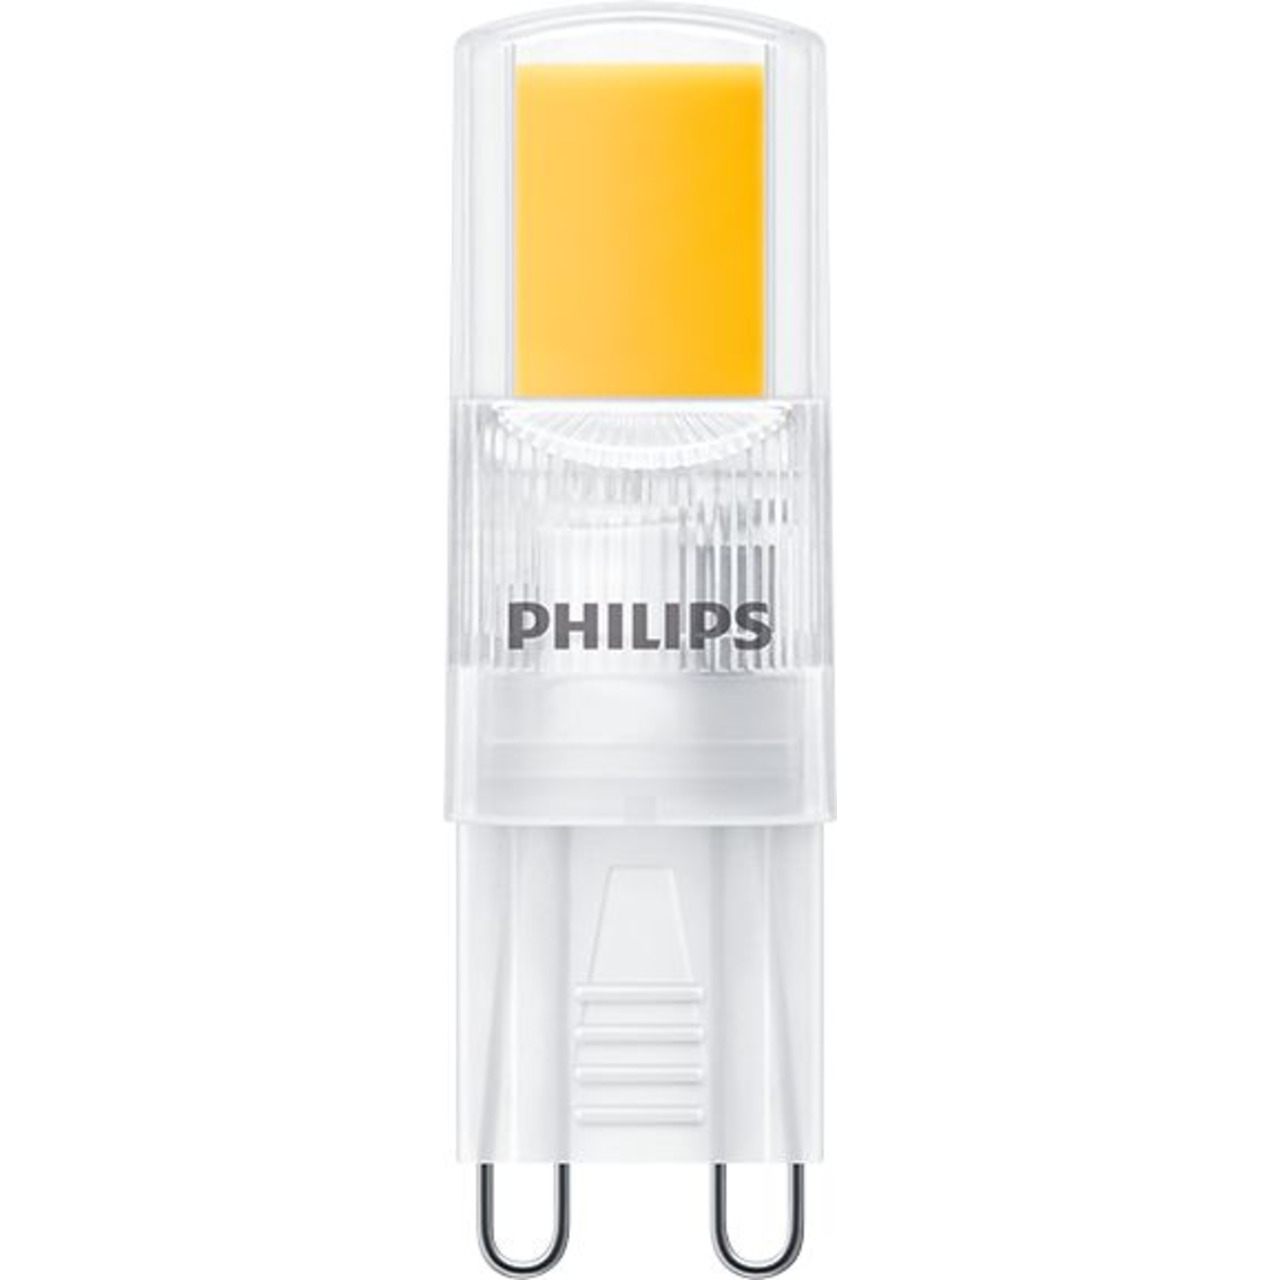 Philips 2-W-G9-LED-Lampe CorePro LEDcapsule- Stiftsockellampe- 220 lm- warmweiss- 2700 K